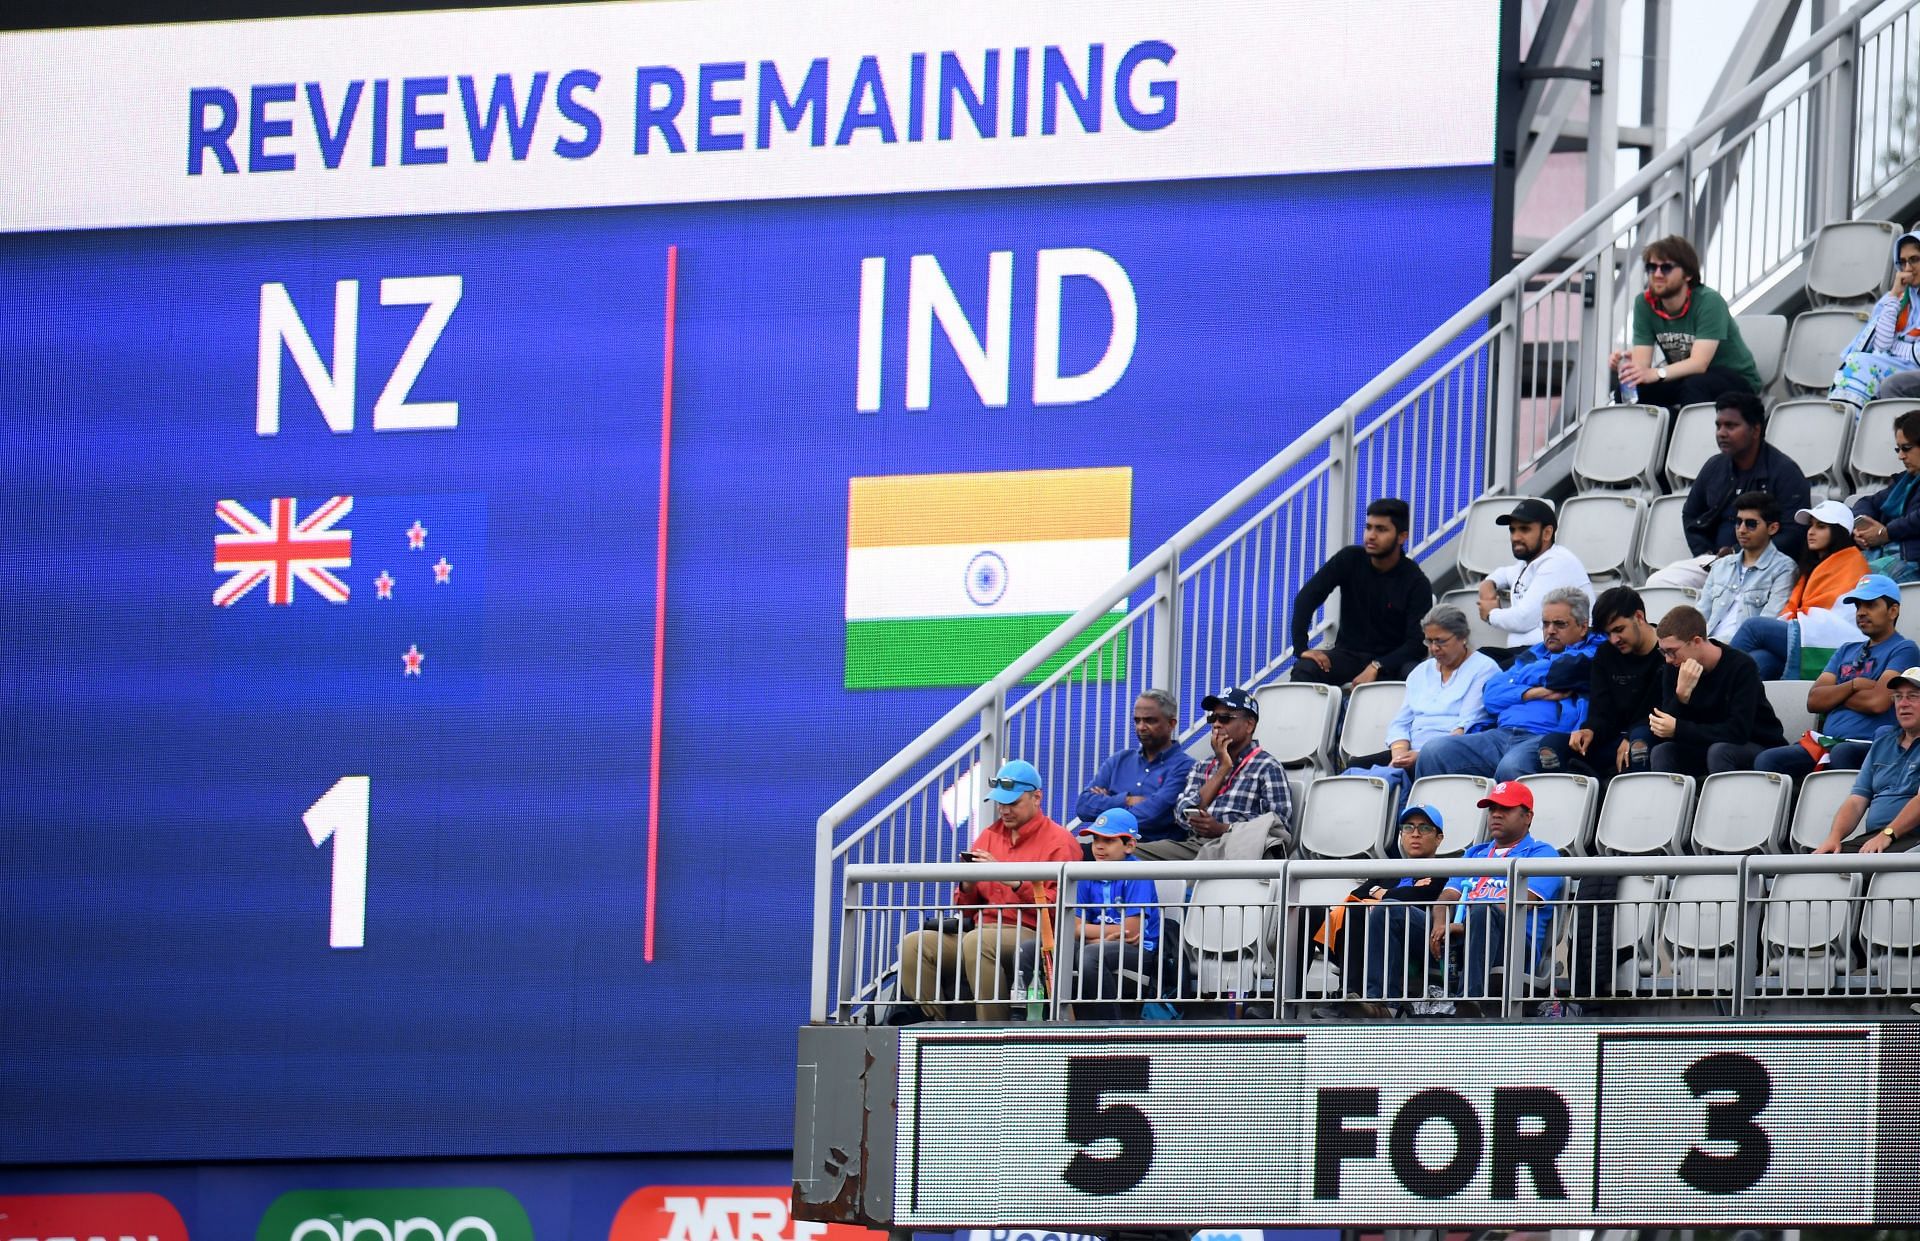 न्यूज़ीलैंड ने हाल ही में बांग्लादेश के खिलाफ टेस्ट सीरीज का आयोजन बखूबी रूप से किया